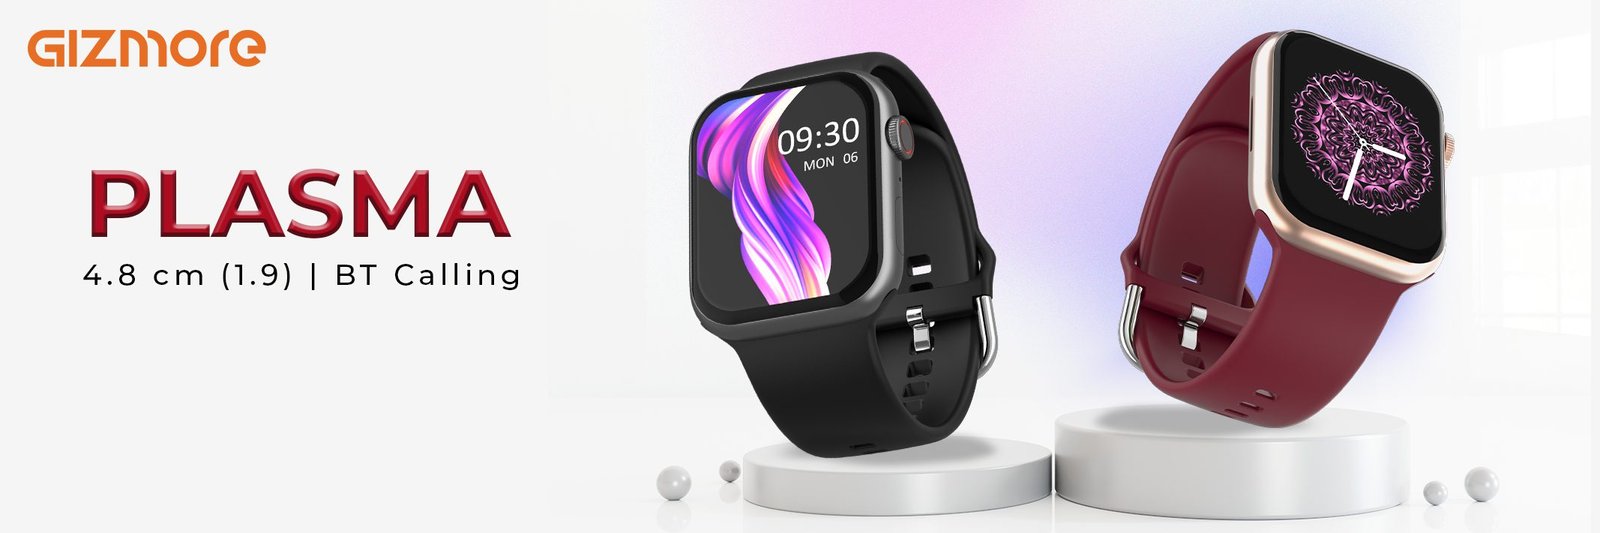 मार्किट में धूम मचा रही ये Gizmore Smartwatch, डिजाइन देखकर हो जाएंगे हैरान